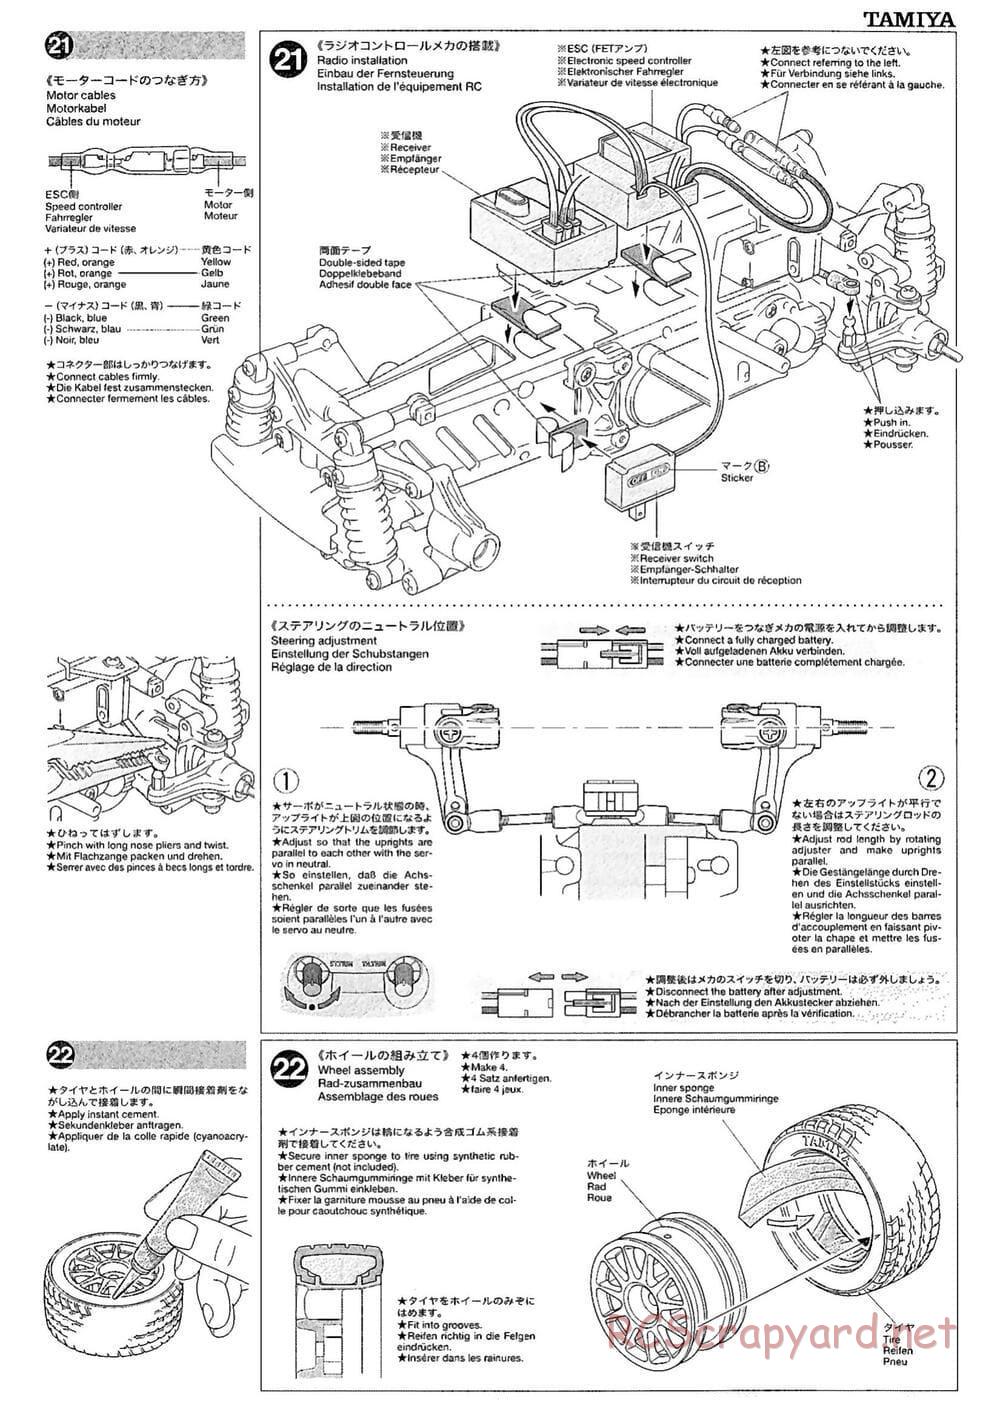 Tamiya - M-03M Chassis - Manual - Page 11